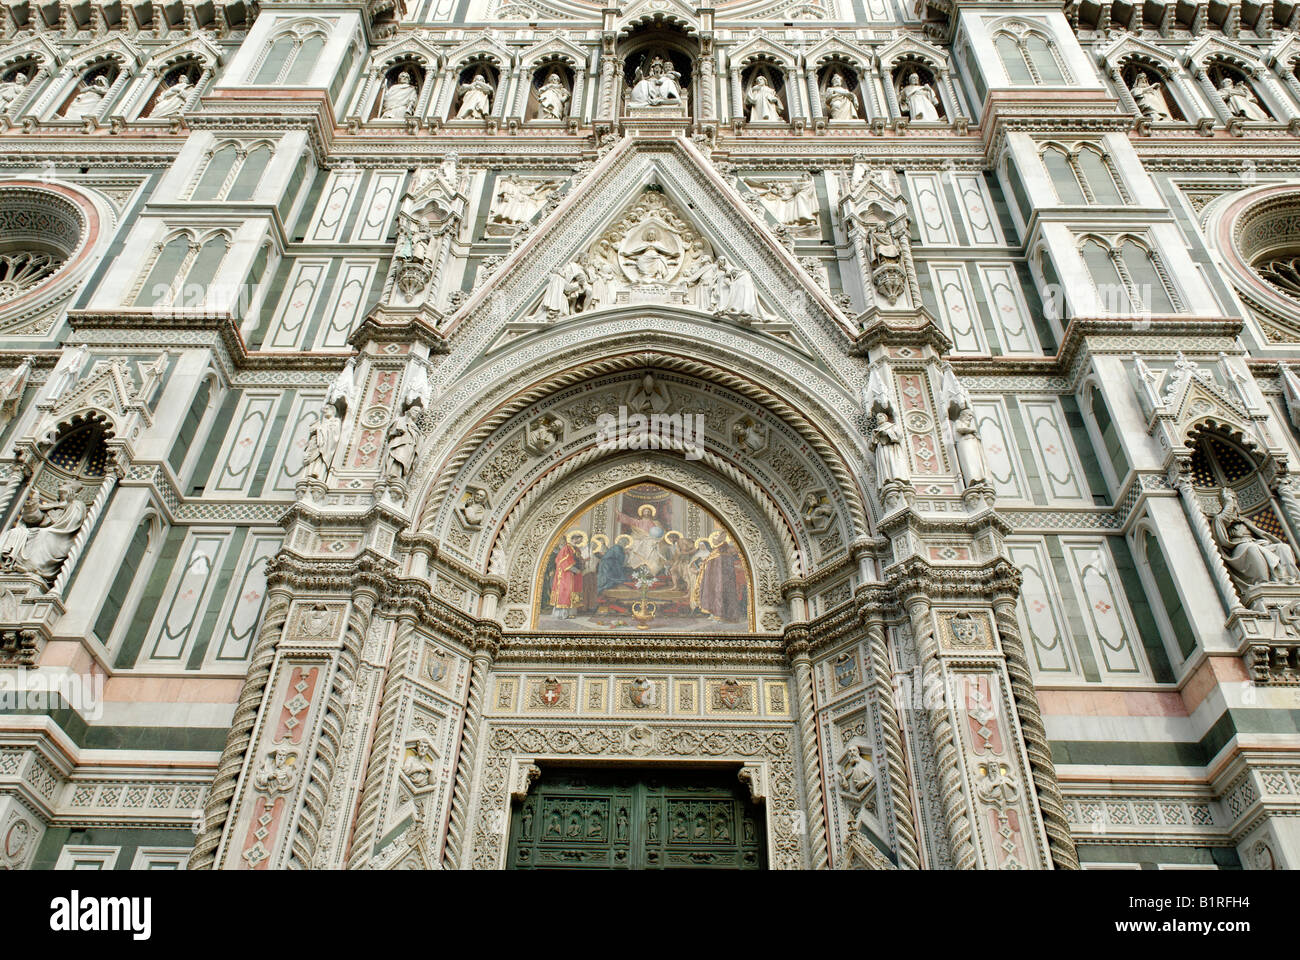 Fassade mármol decorado de la catedral, el Duomo de Santa Maria del Fiore, sitio del patrimonio mundial de la UNESCO, Florencia, Toscana, Italia, E Foto de stock